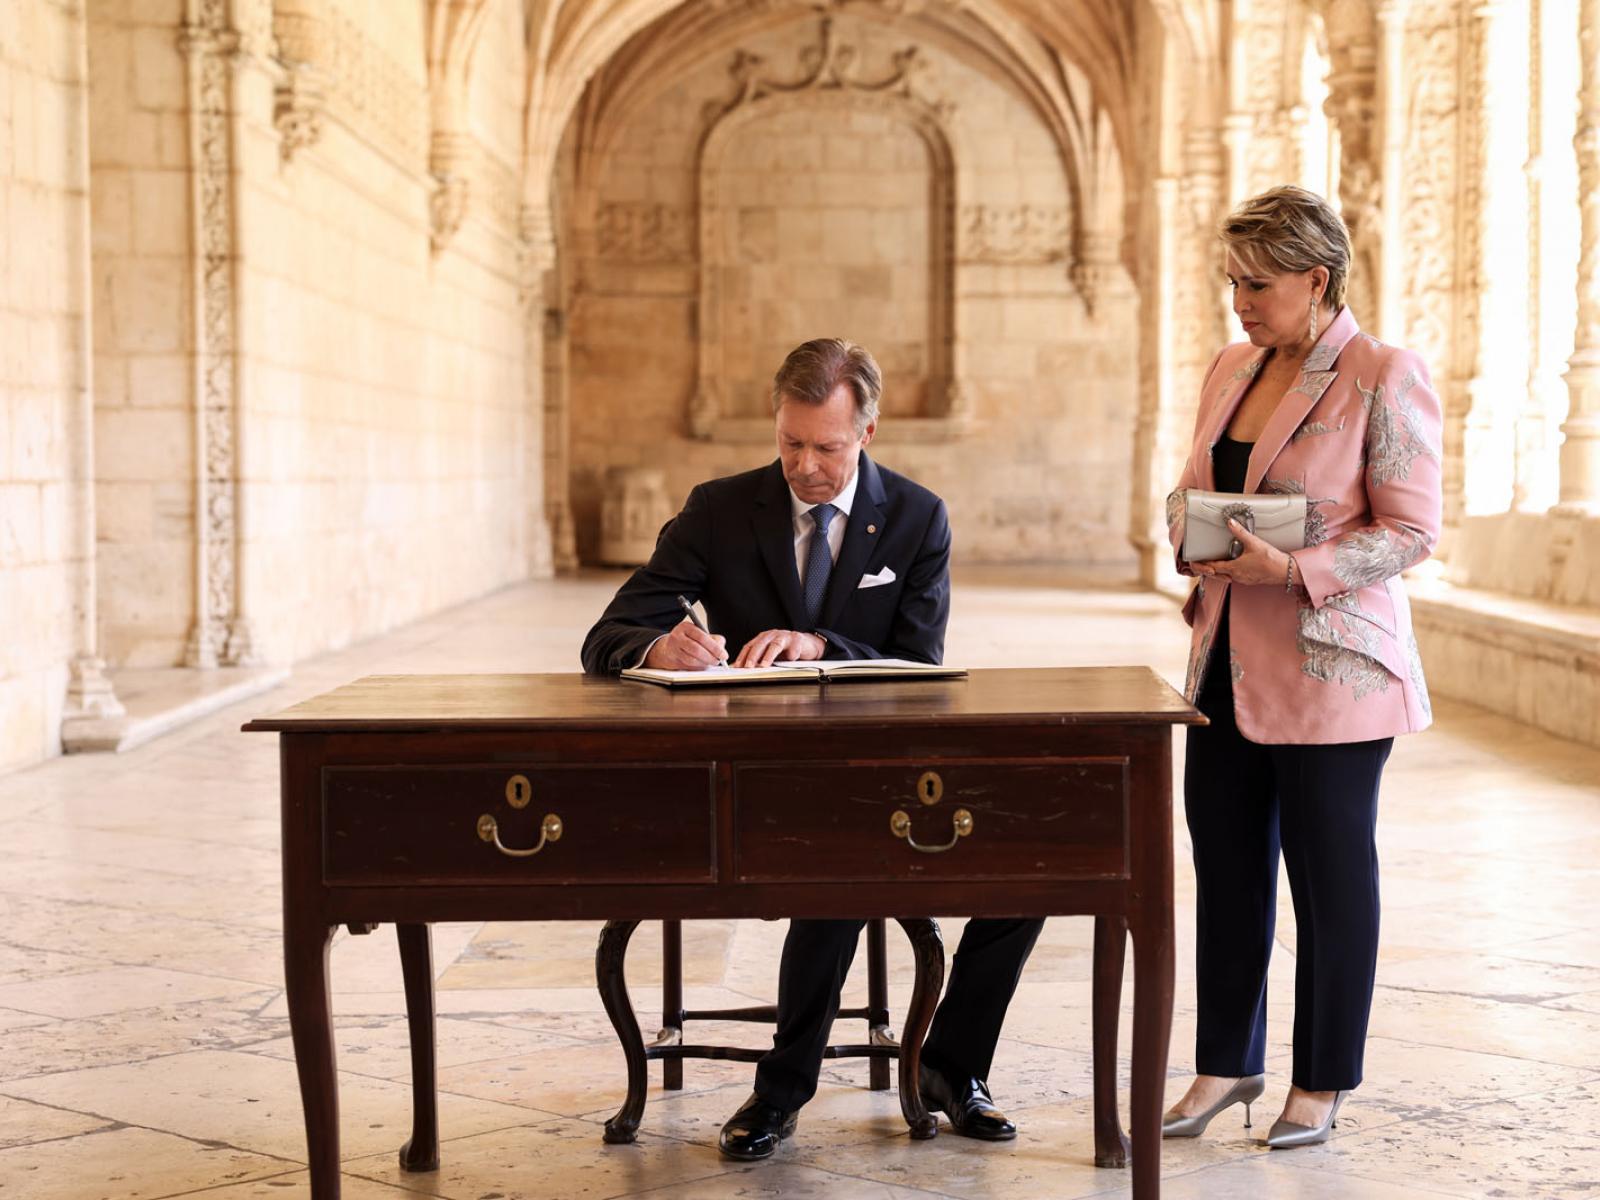 Le Grand-Duc signe le livre d'or à l'issue de la visite à l'église